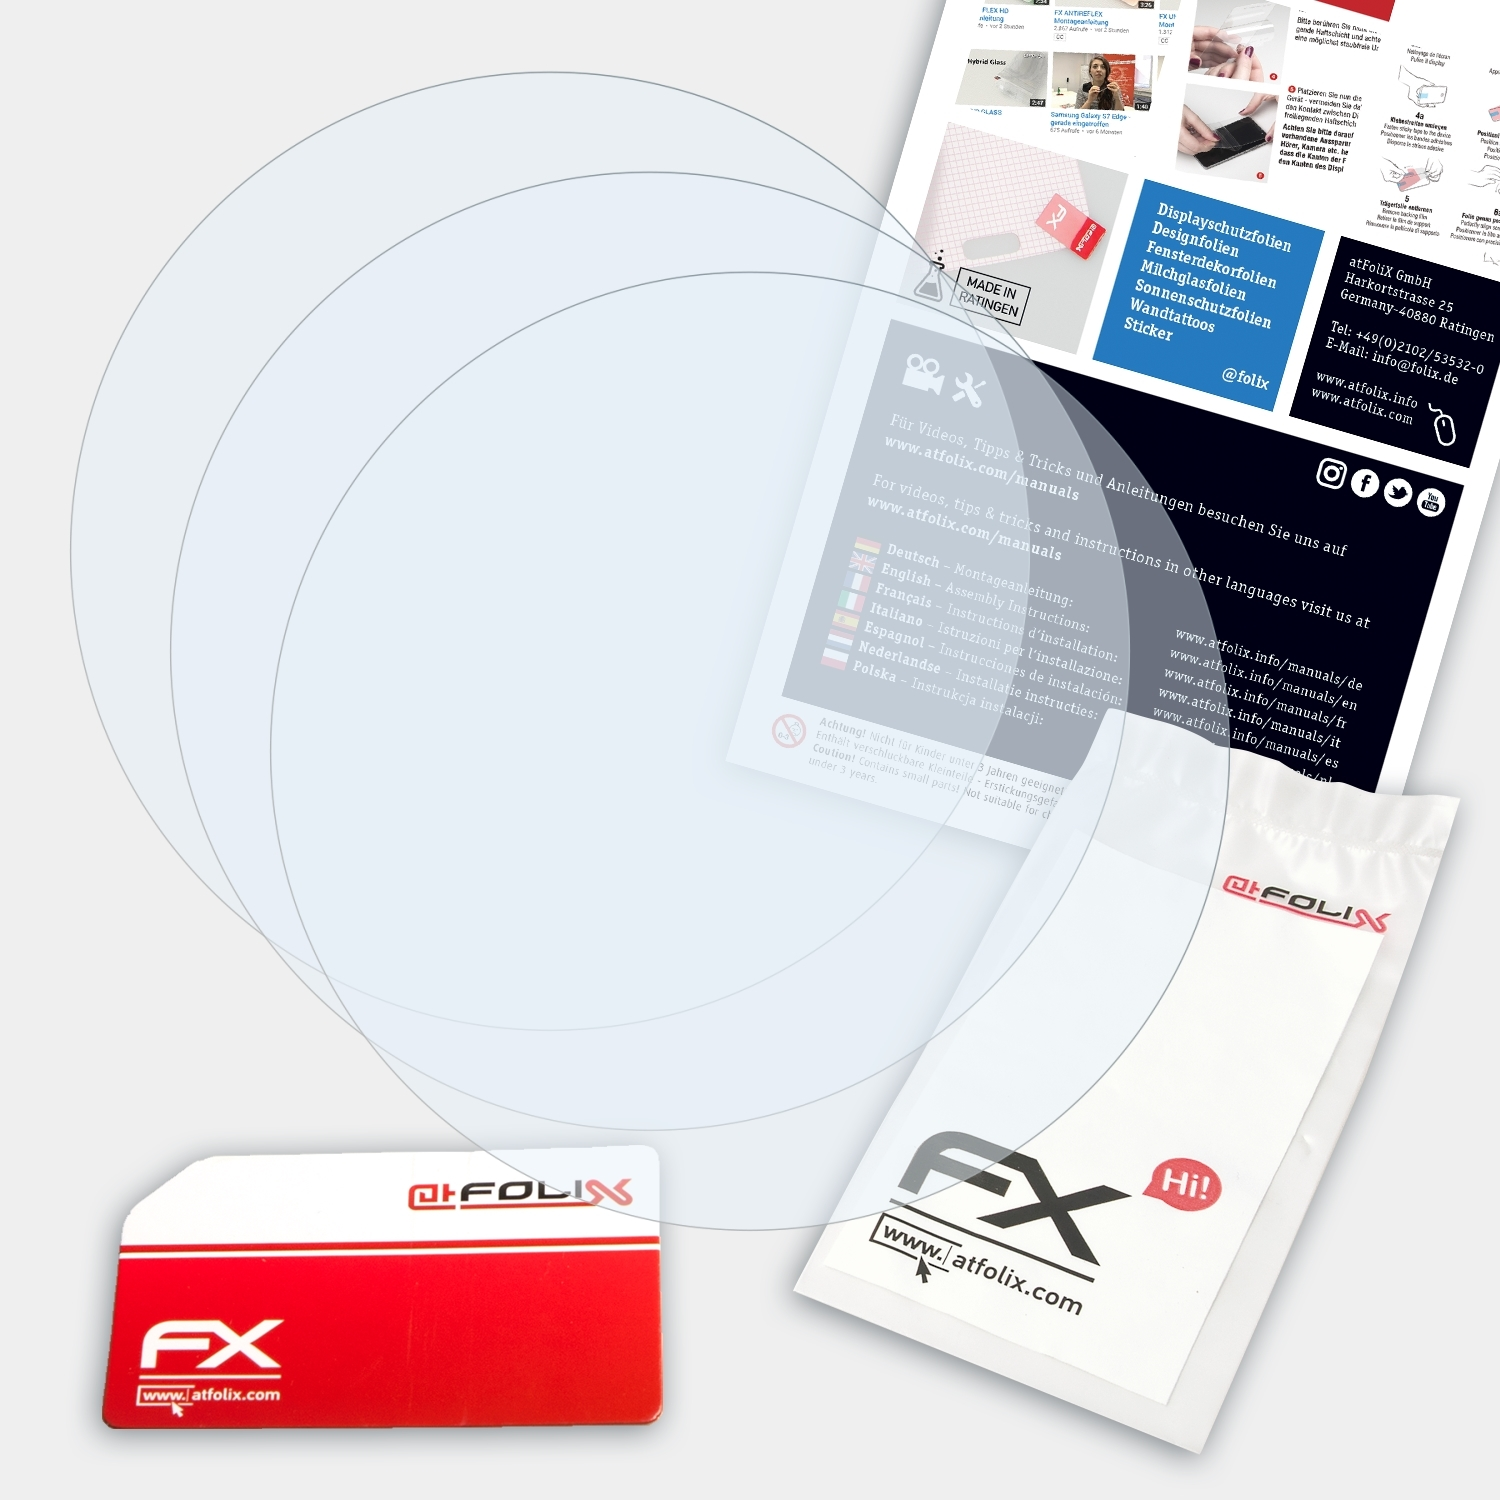 ATFOLIX 3x Displayschutz(für 2) Stratos Amazfit FX-Clear